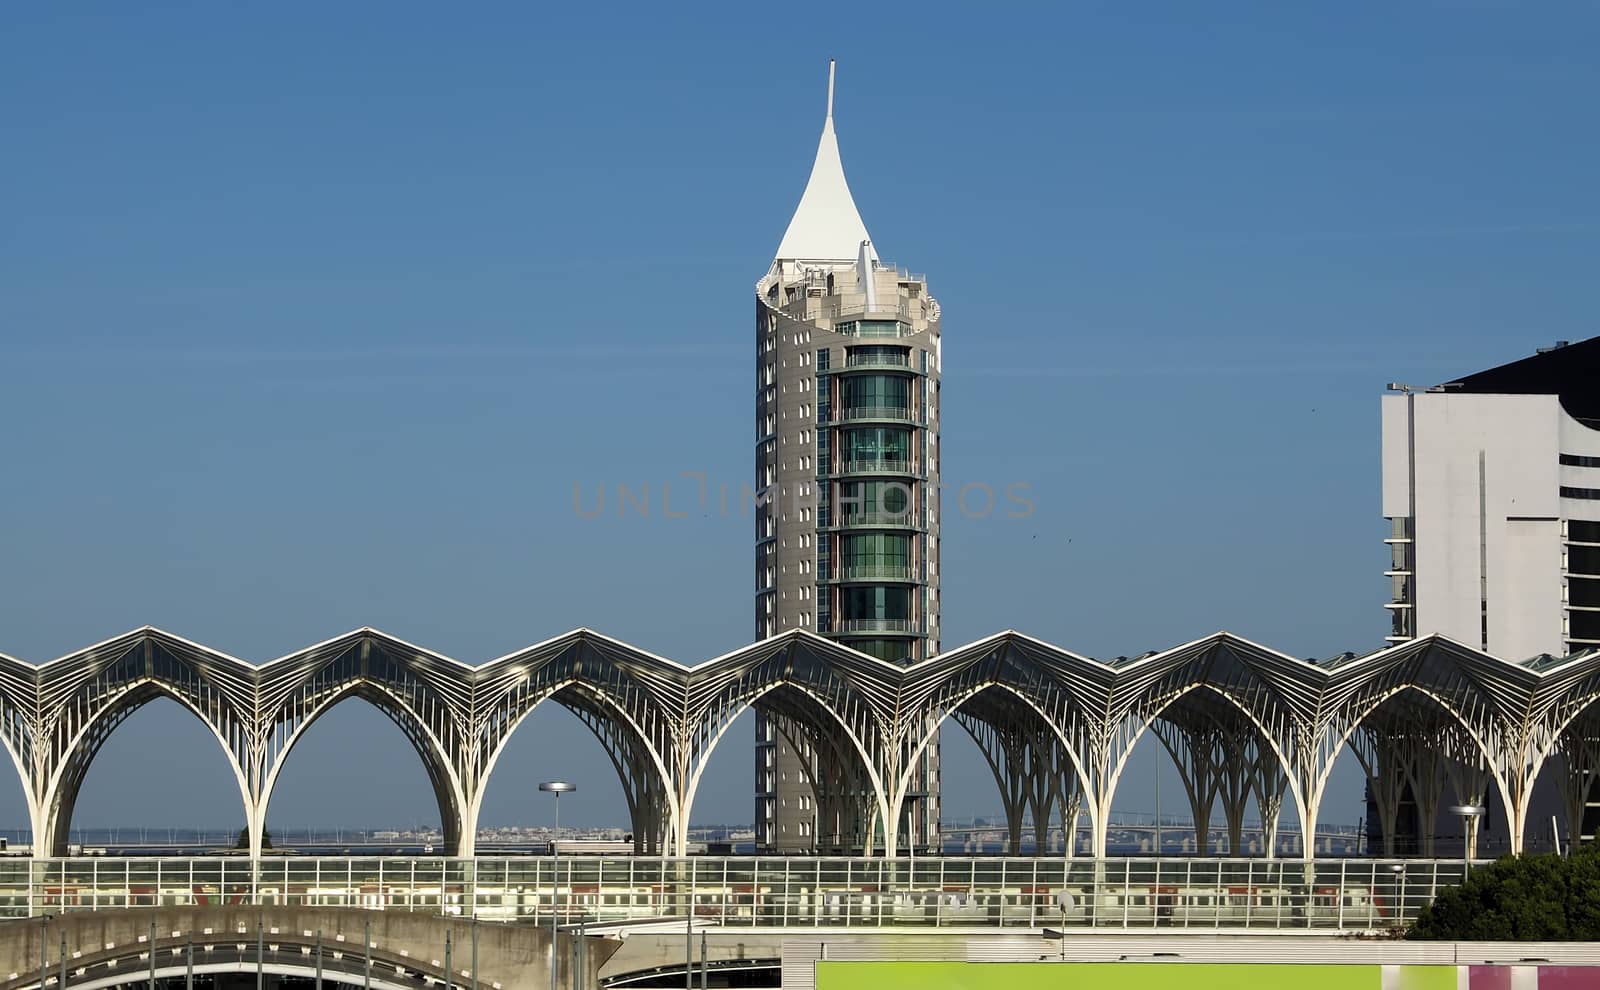 Intersting architecture of the railway station Oriente in Lisbon in Portugal by Stimmungsbilder